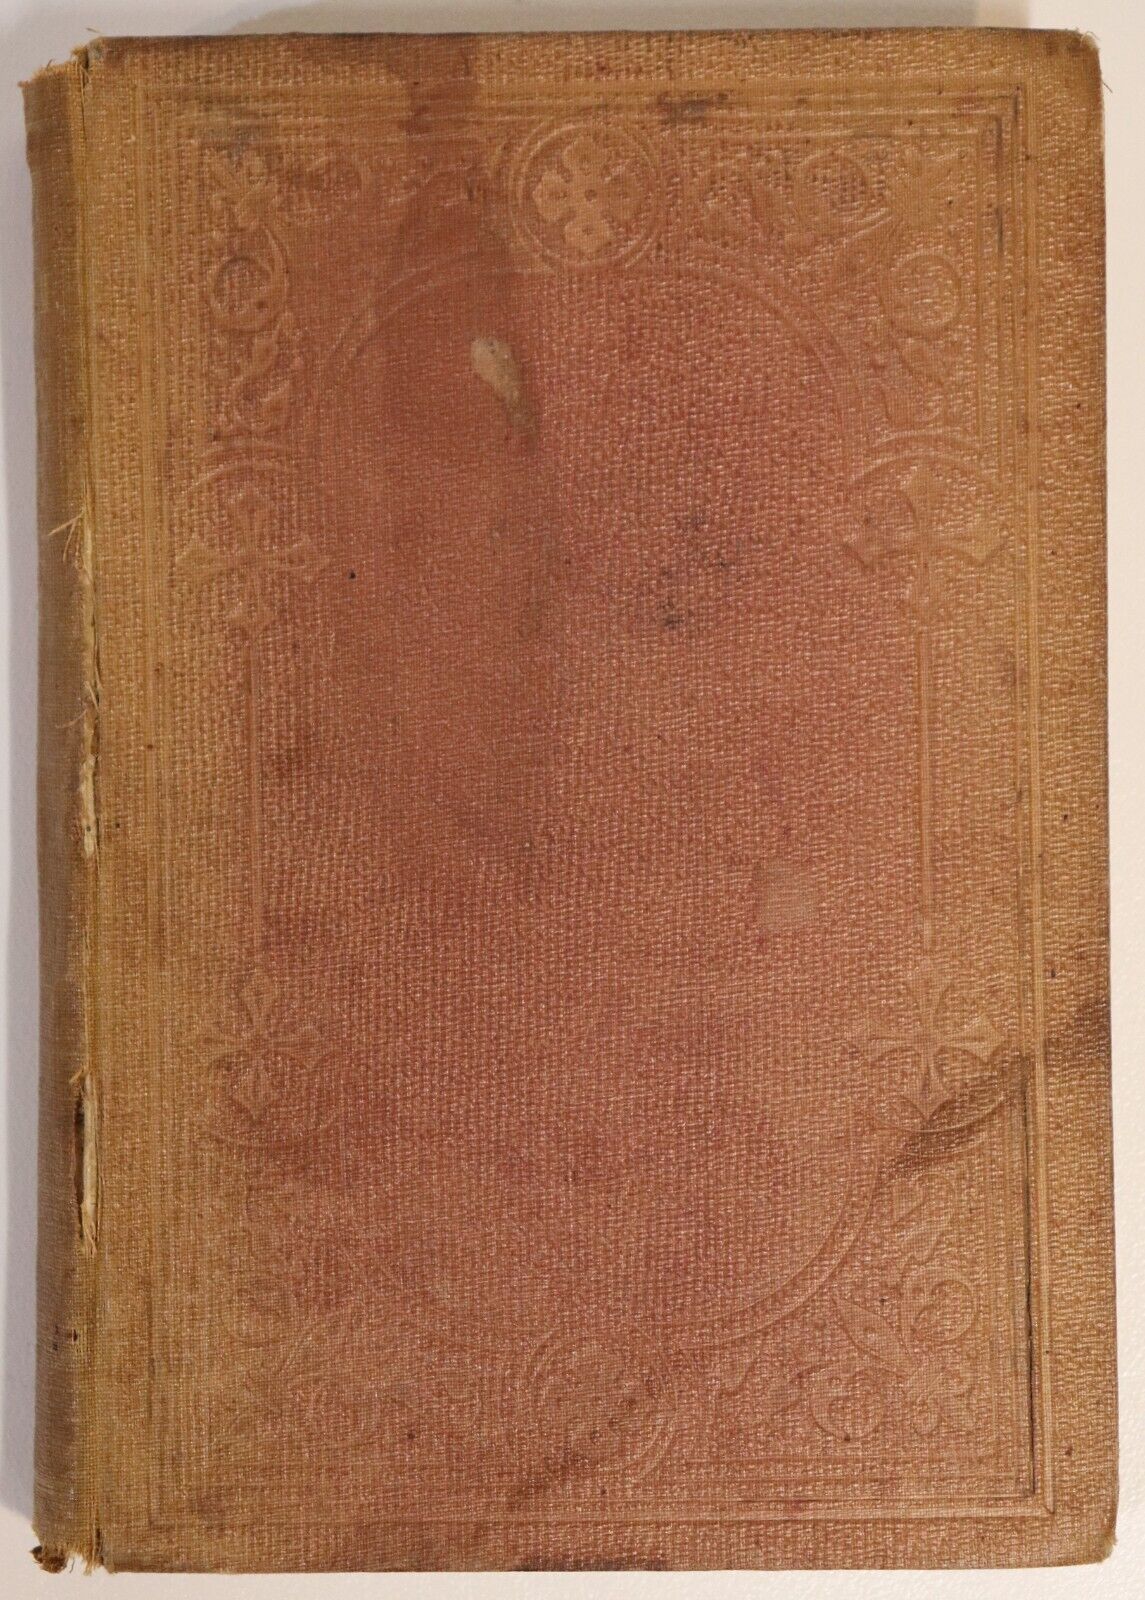 1870 Emily Graham: A Temperance Tale 1st Edition Antique Australian Fiction Book